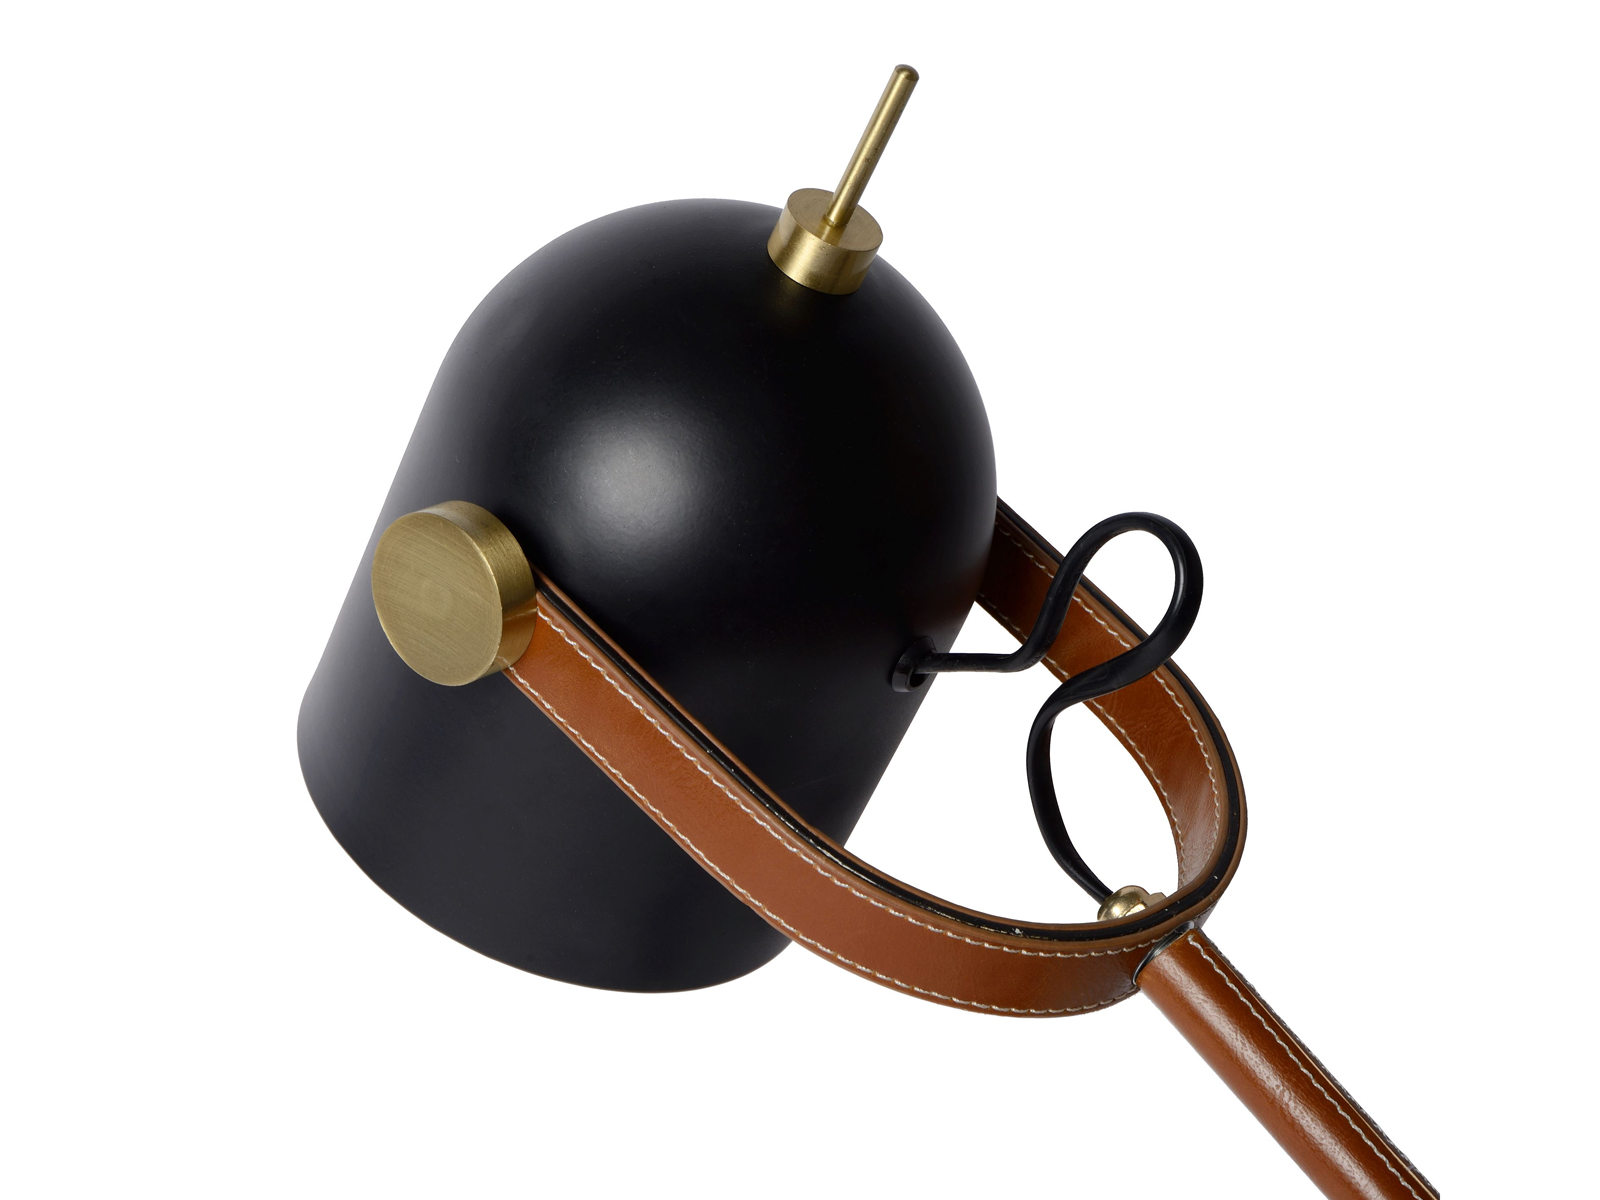 Stolní lampa Waylon, černá, E27, 52,5cm